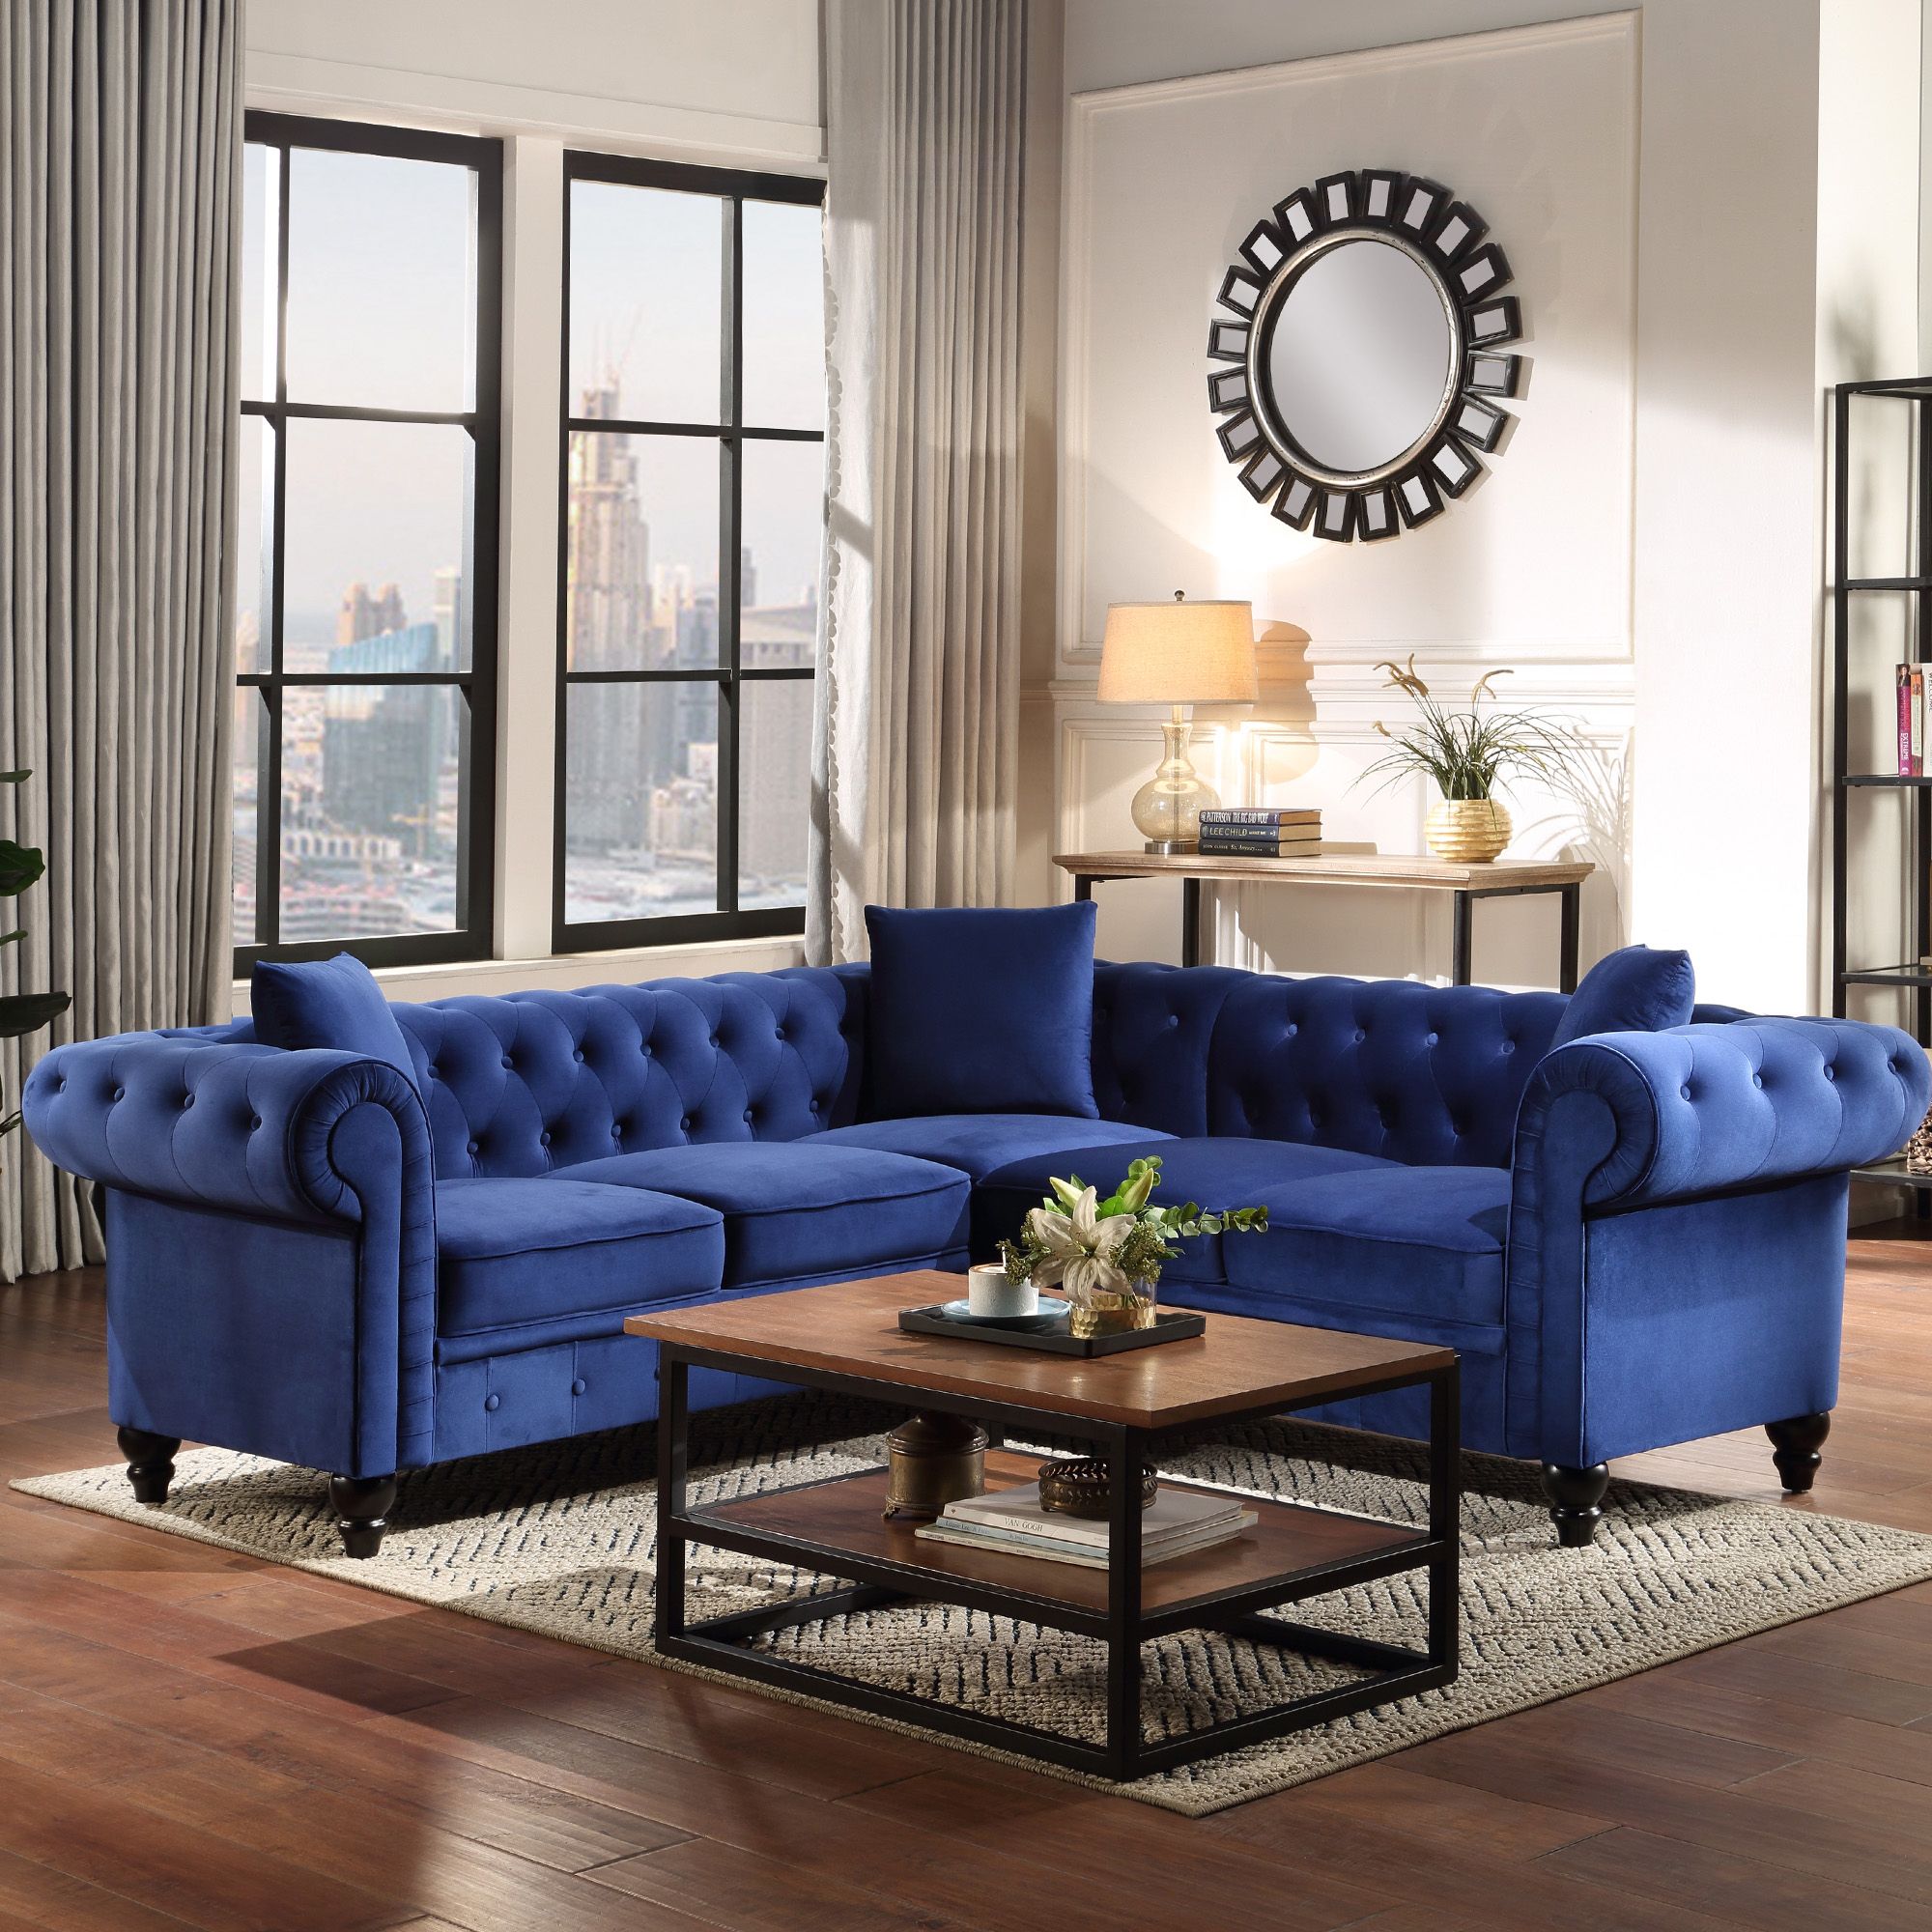 Velvet Tufted Sofa For Living Room, Urhomepro Mid Century Regarding Elegant Sectional Sofas (View 9 of 15)